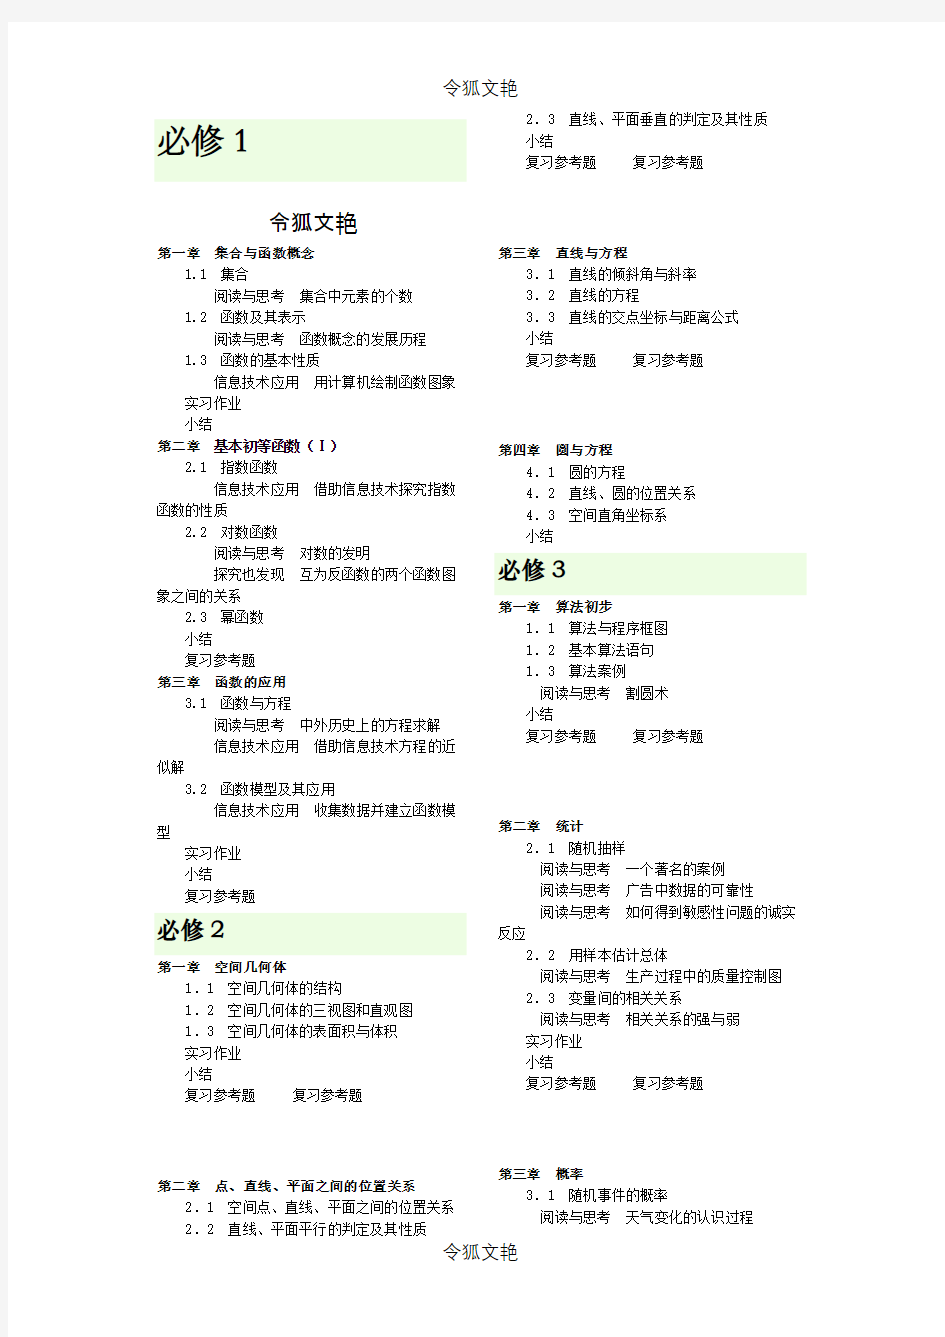 广东省高中数学课本及目录 (1)之令狐文艳创作